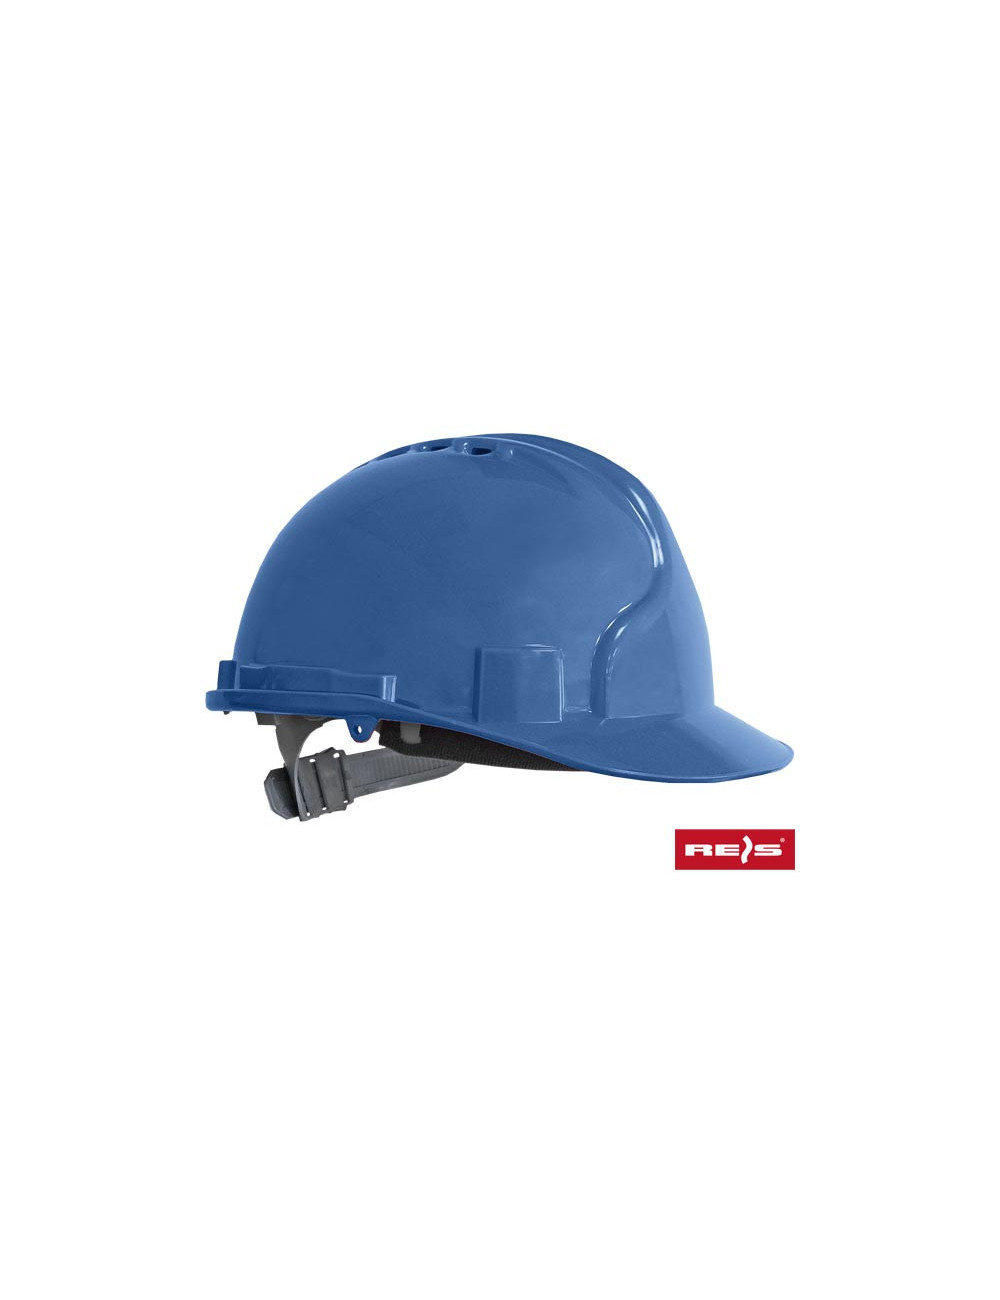 Safety helmet kas n blue Reis